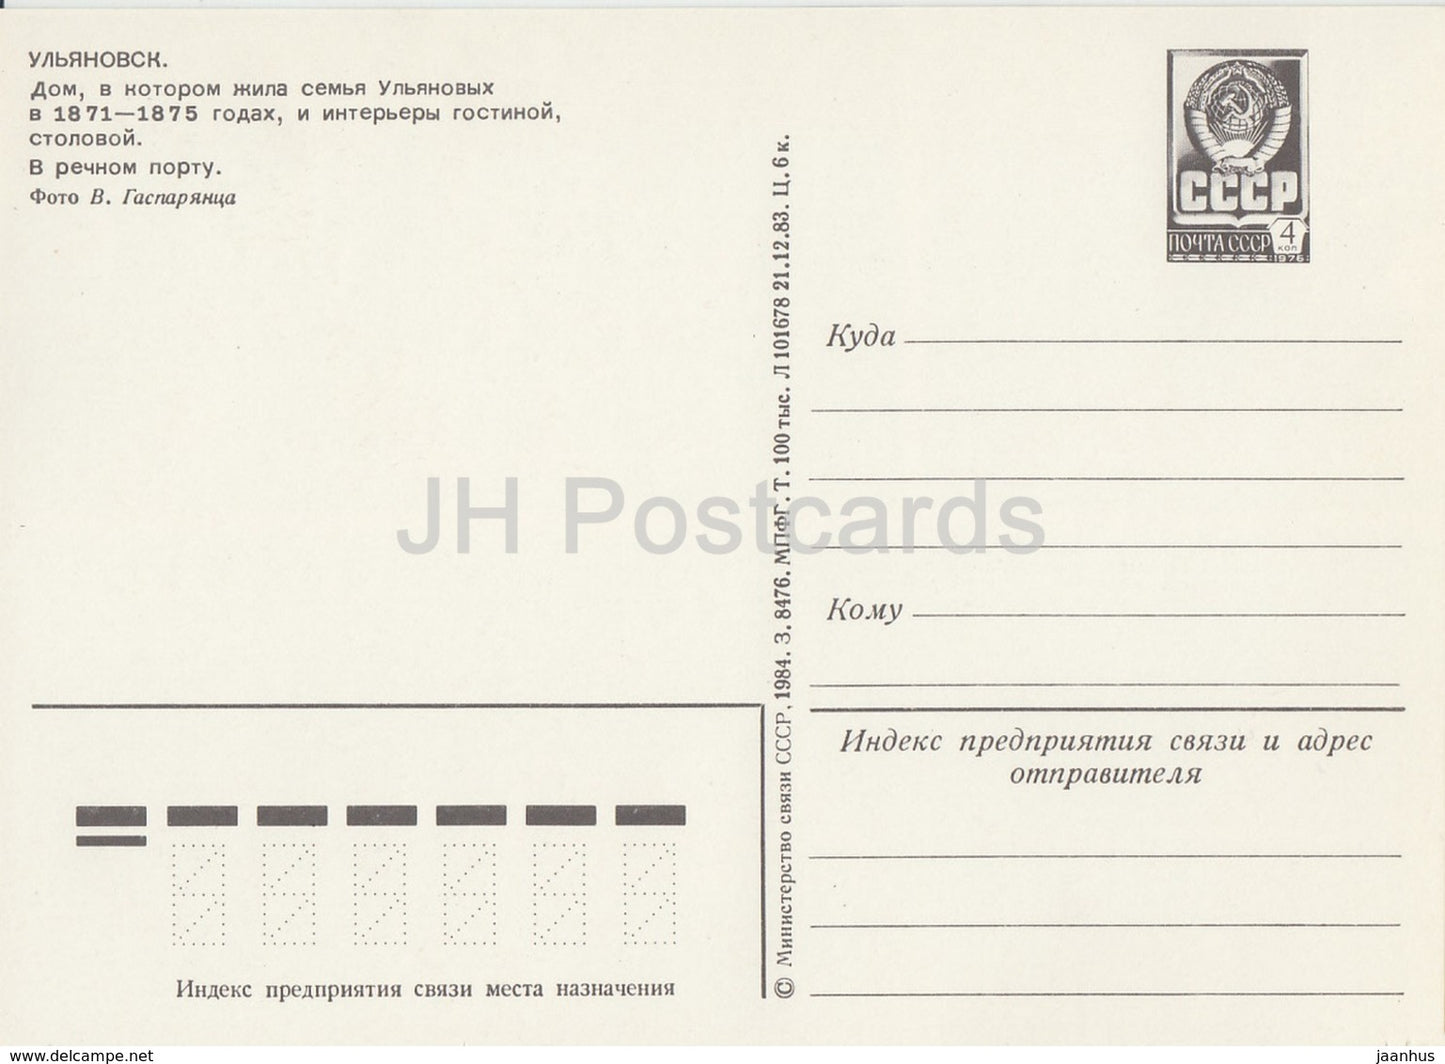 Oulianovsk - Maison familiale Oulianov - intérieur - port fluvial - navire - entier postal - 1984 - Russie URSS - inutilisé